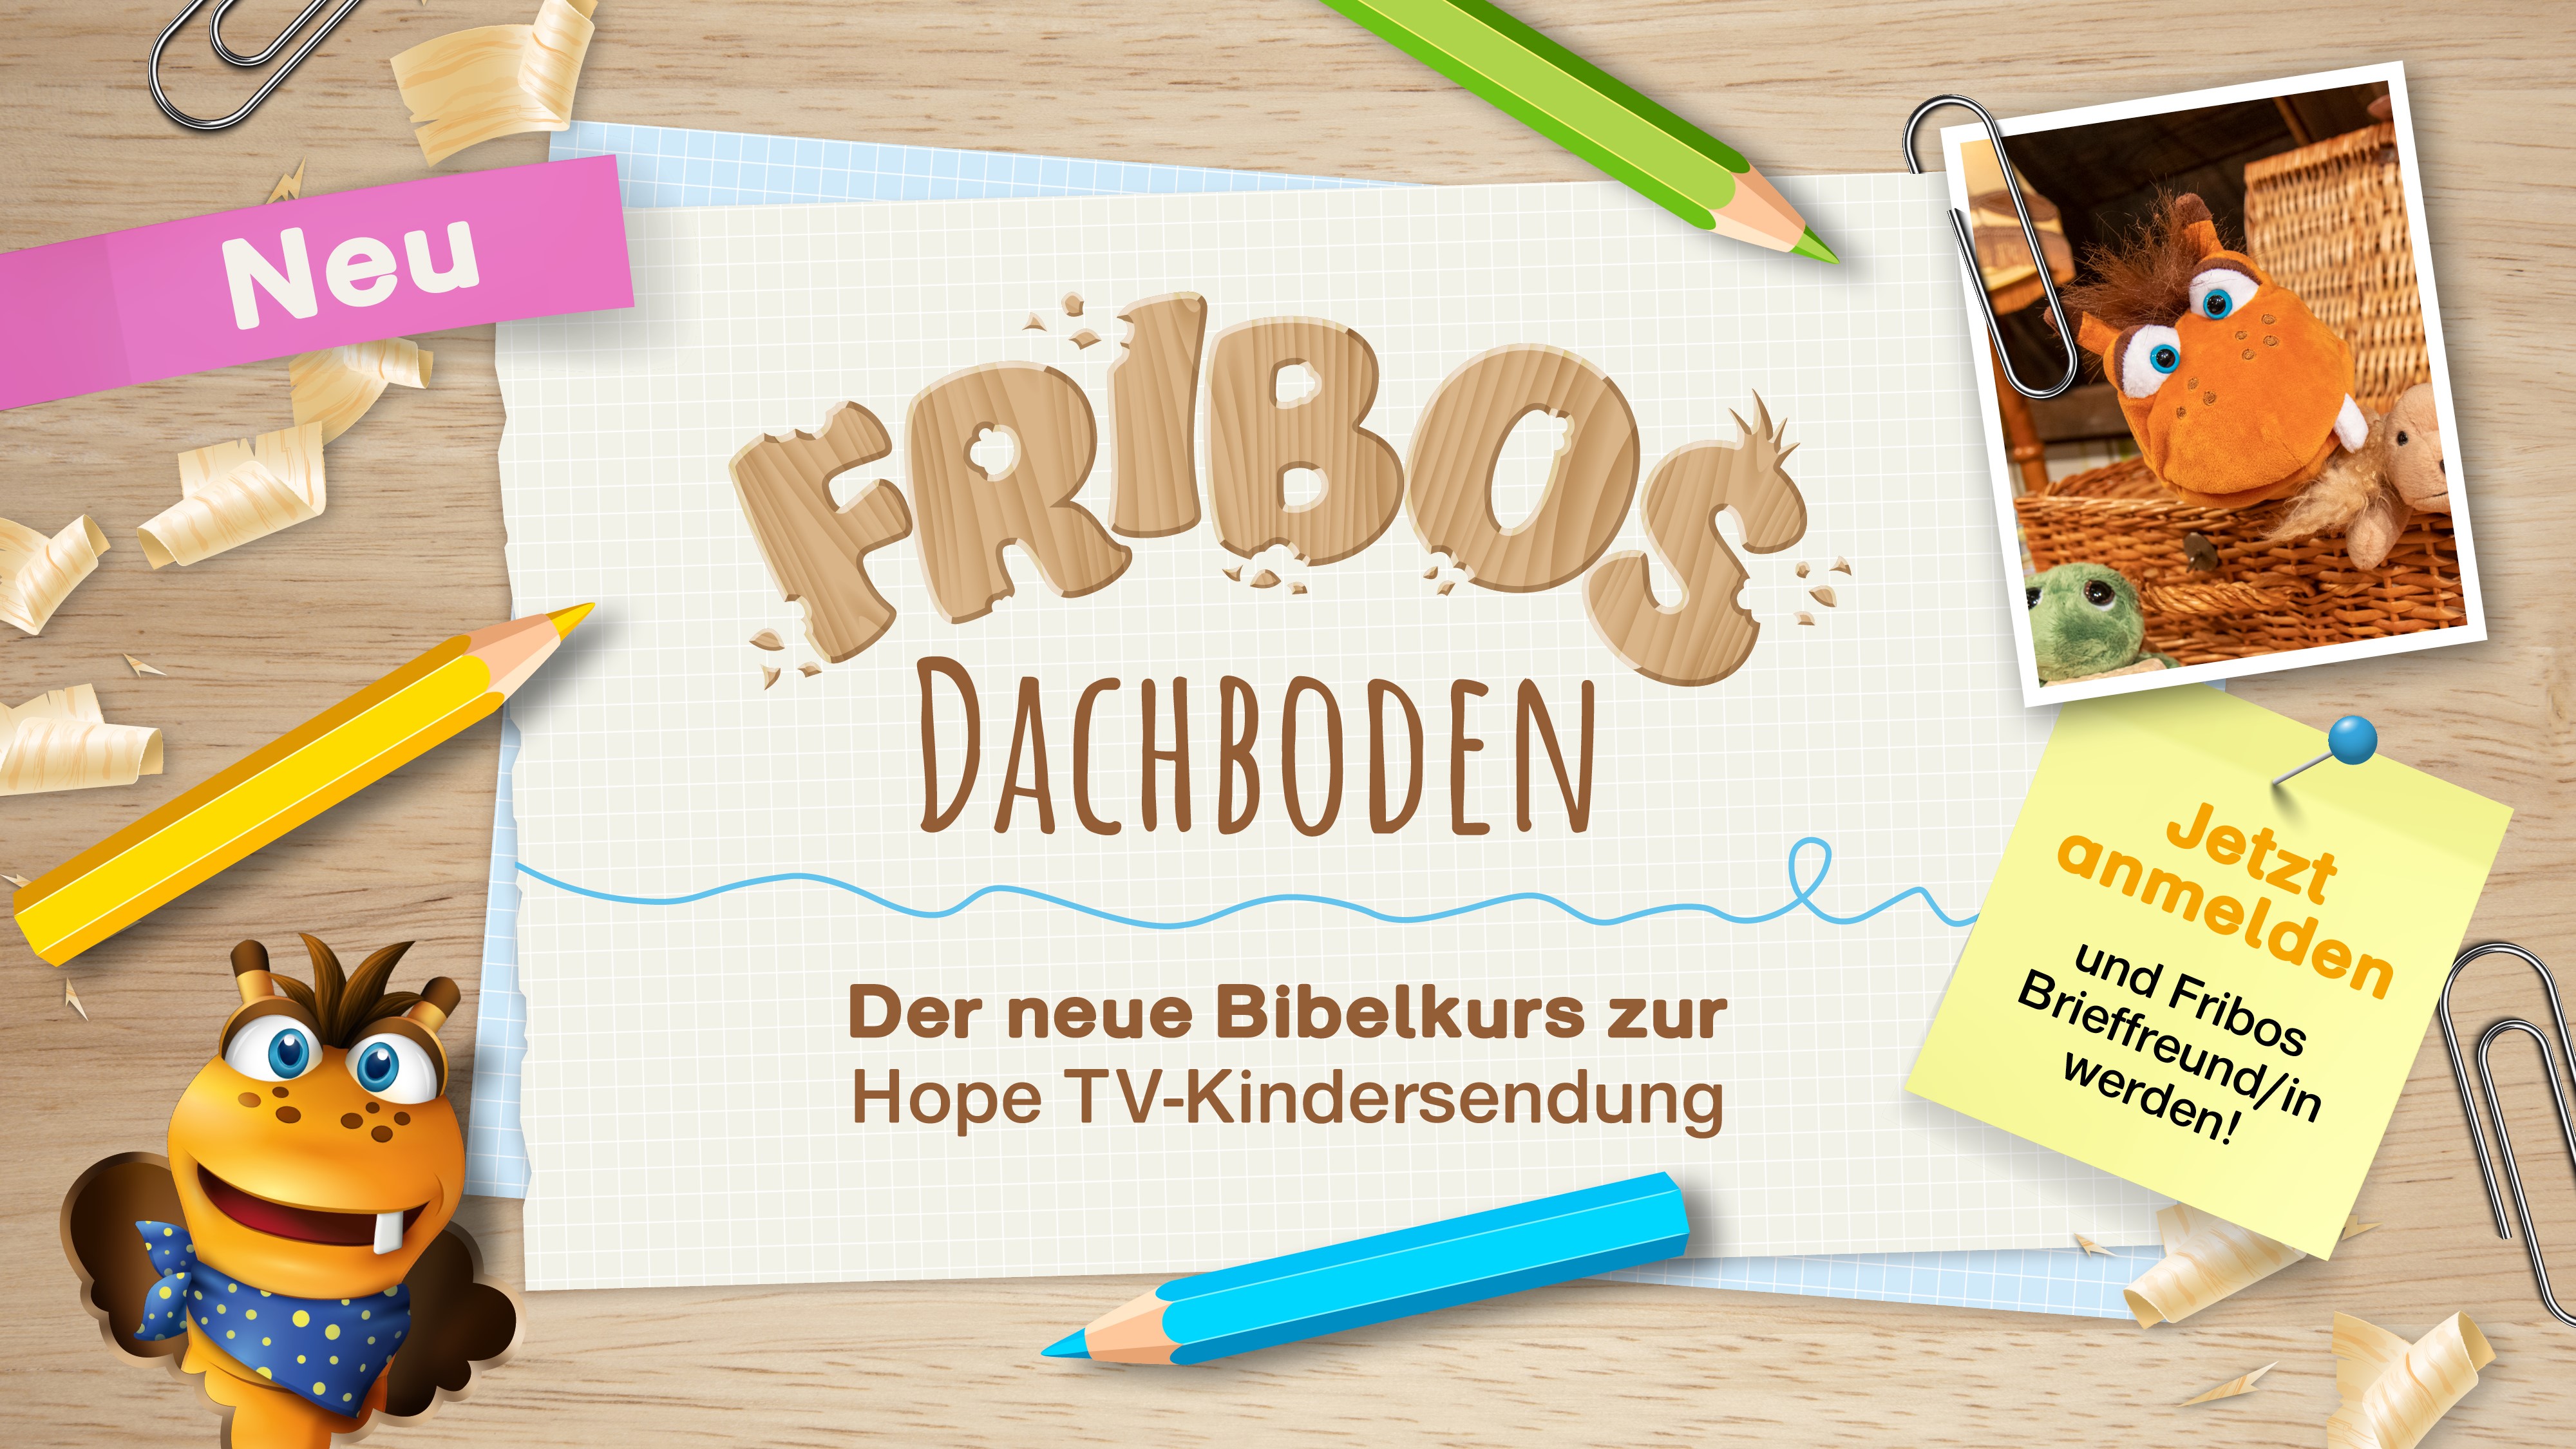 Neuer Kinder-Bibelkurs "Fribos Dachboden"